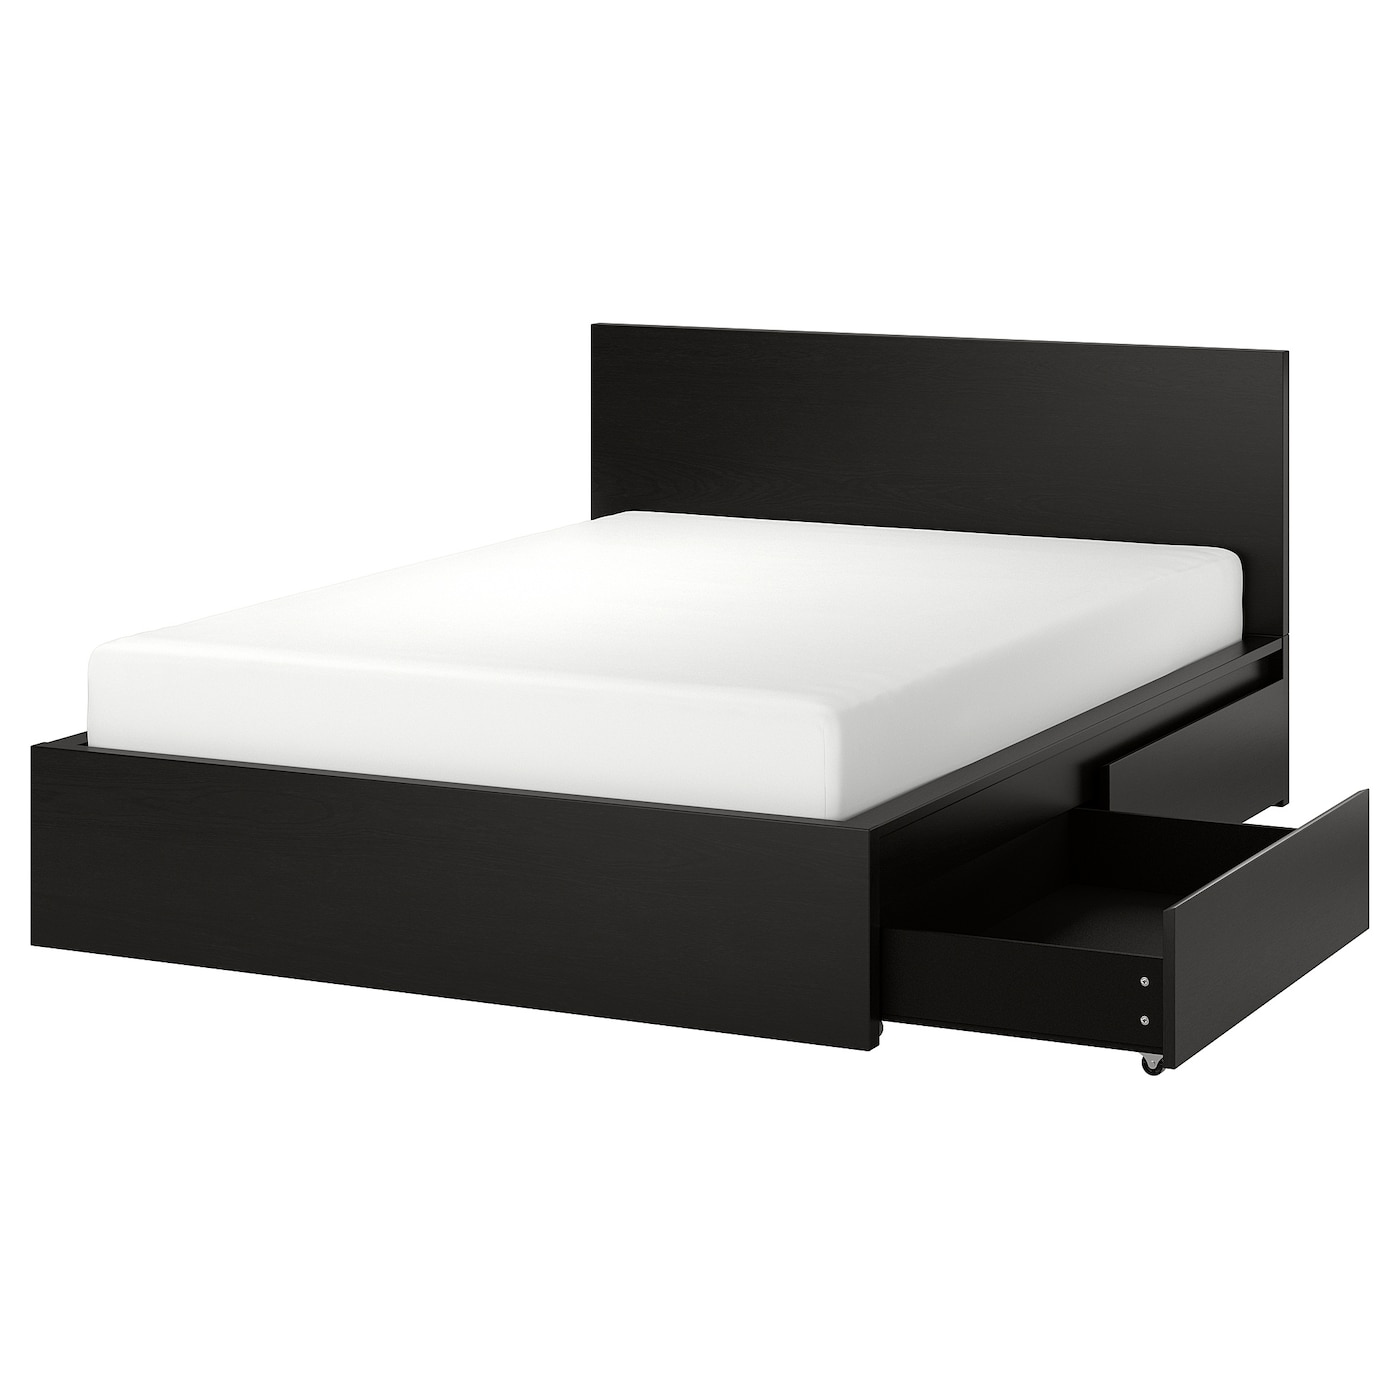 Каркас кровати с 2 ящиками для хранения - IKEA MALM, 200х140 см, черный, МАЛЬМ ИКЕА